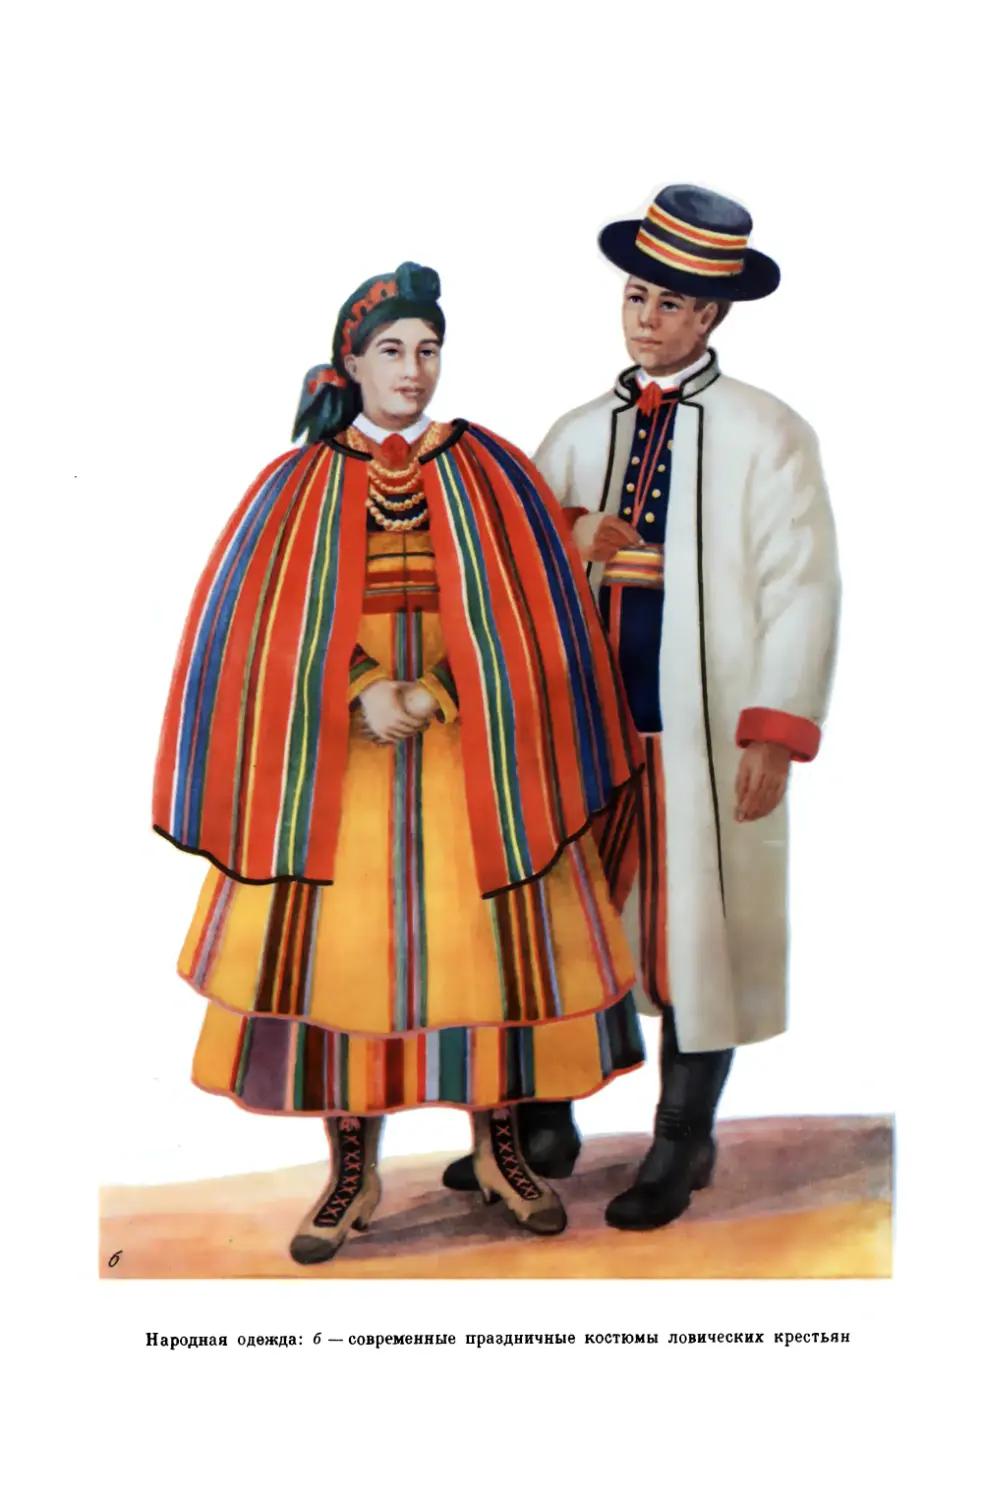 Вклейка. Народная одежда: б — современные праздничные костюмы ловических крестьян